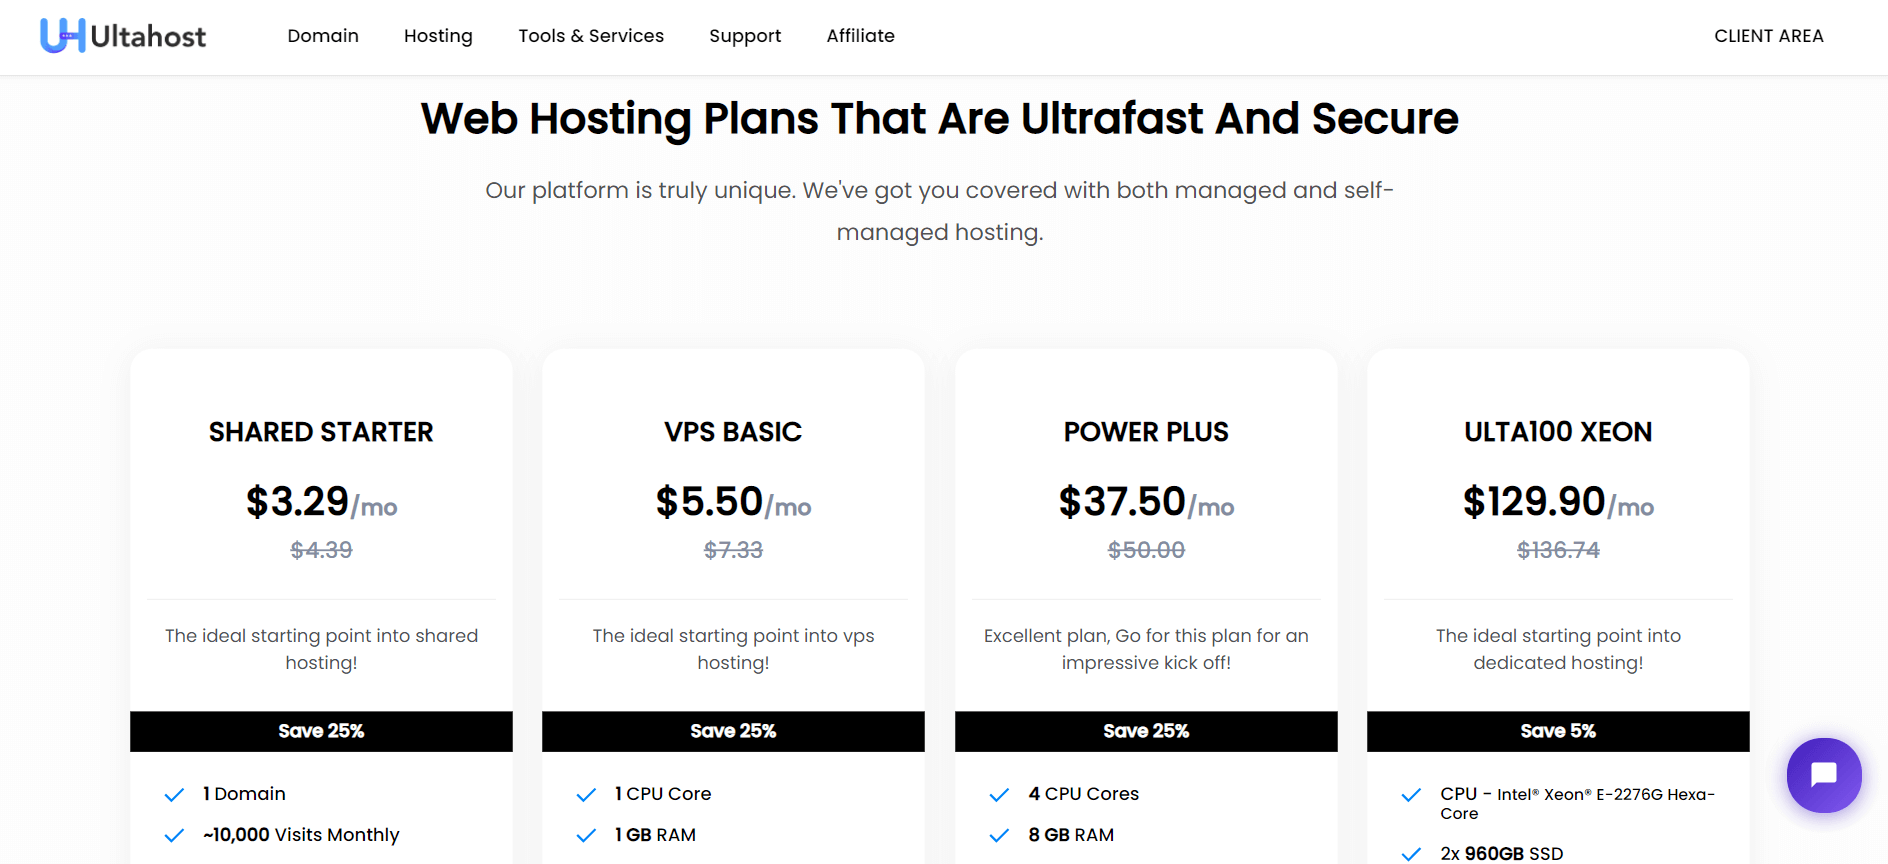 UltaHost Web Hosting